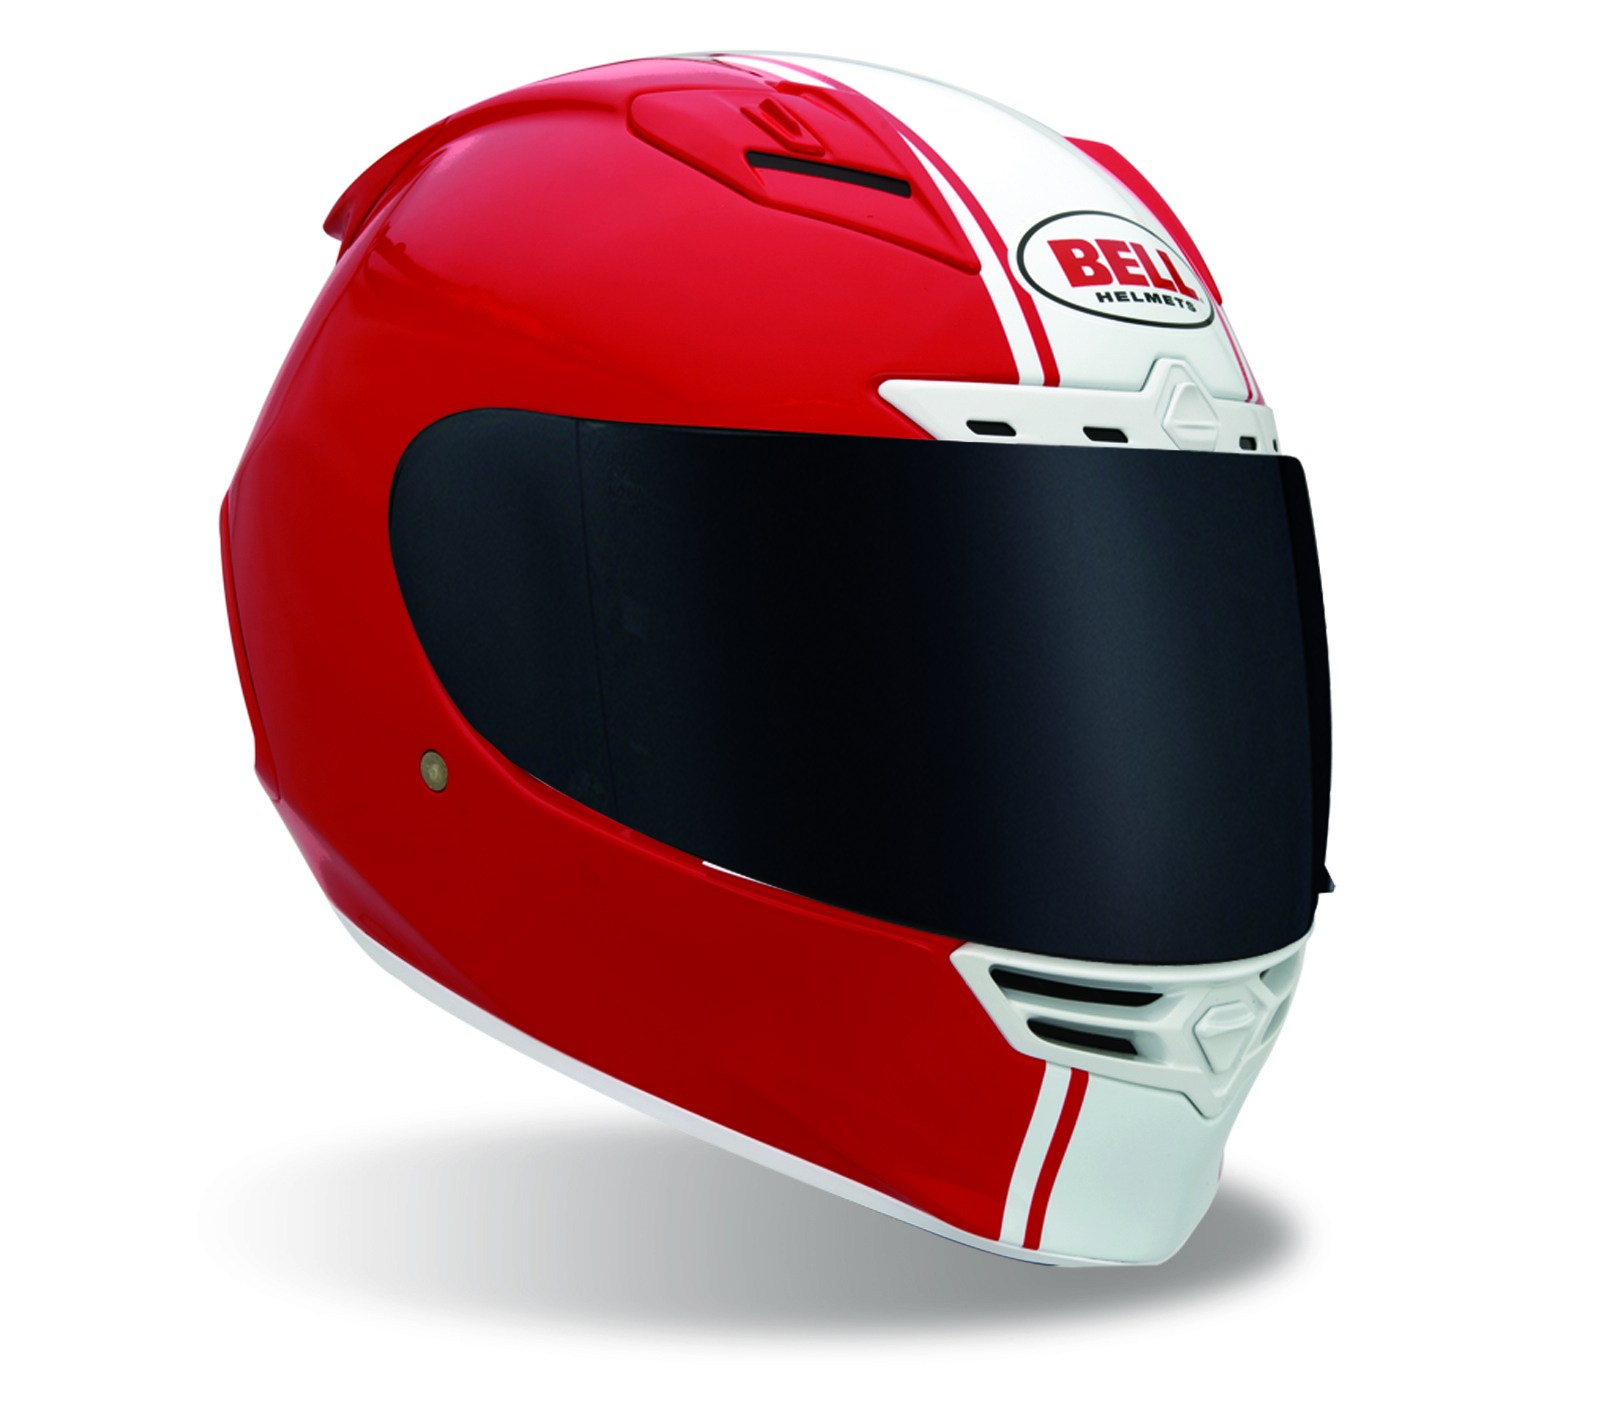 Bell motorcycle helmets